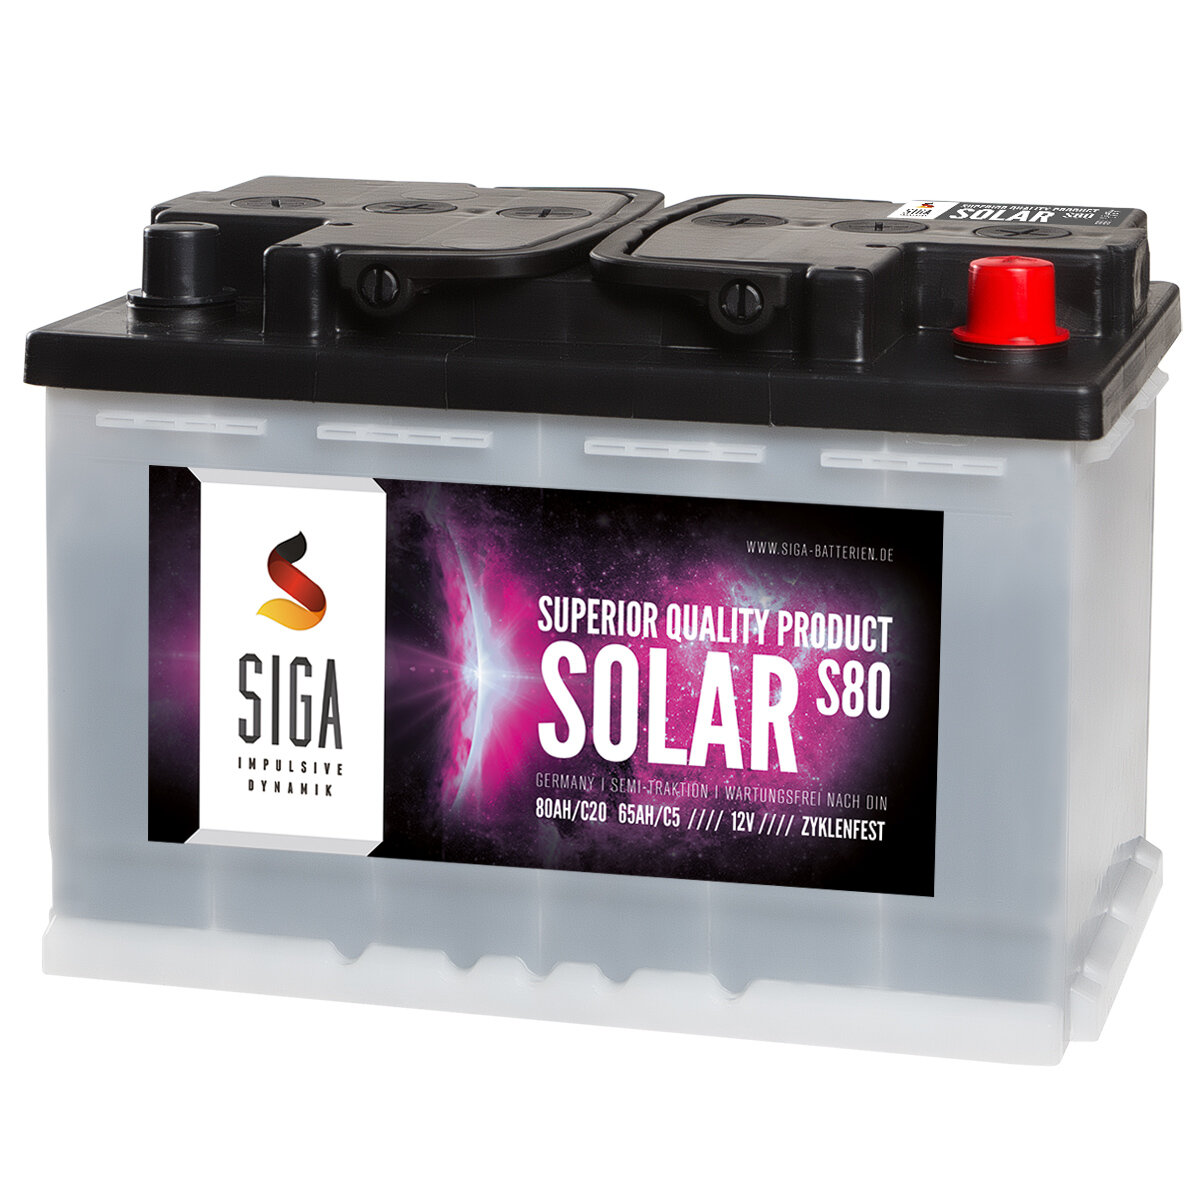 SIGA Solarbatterie S100 12V, 140,99 €